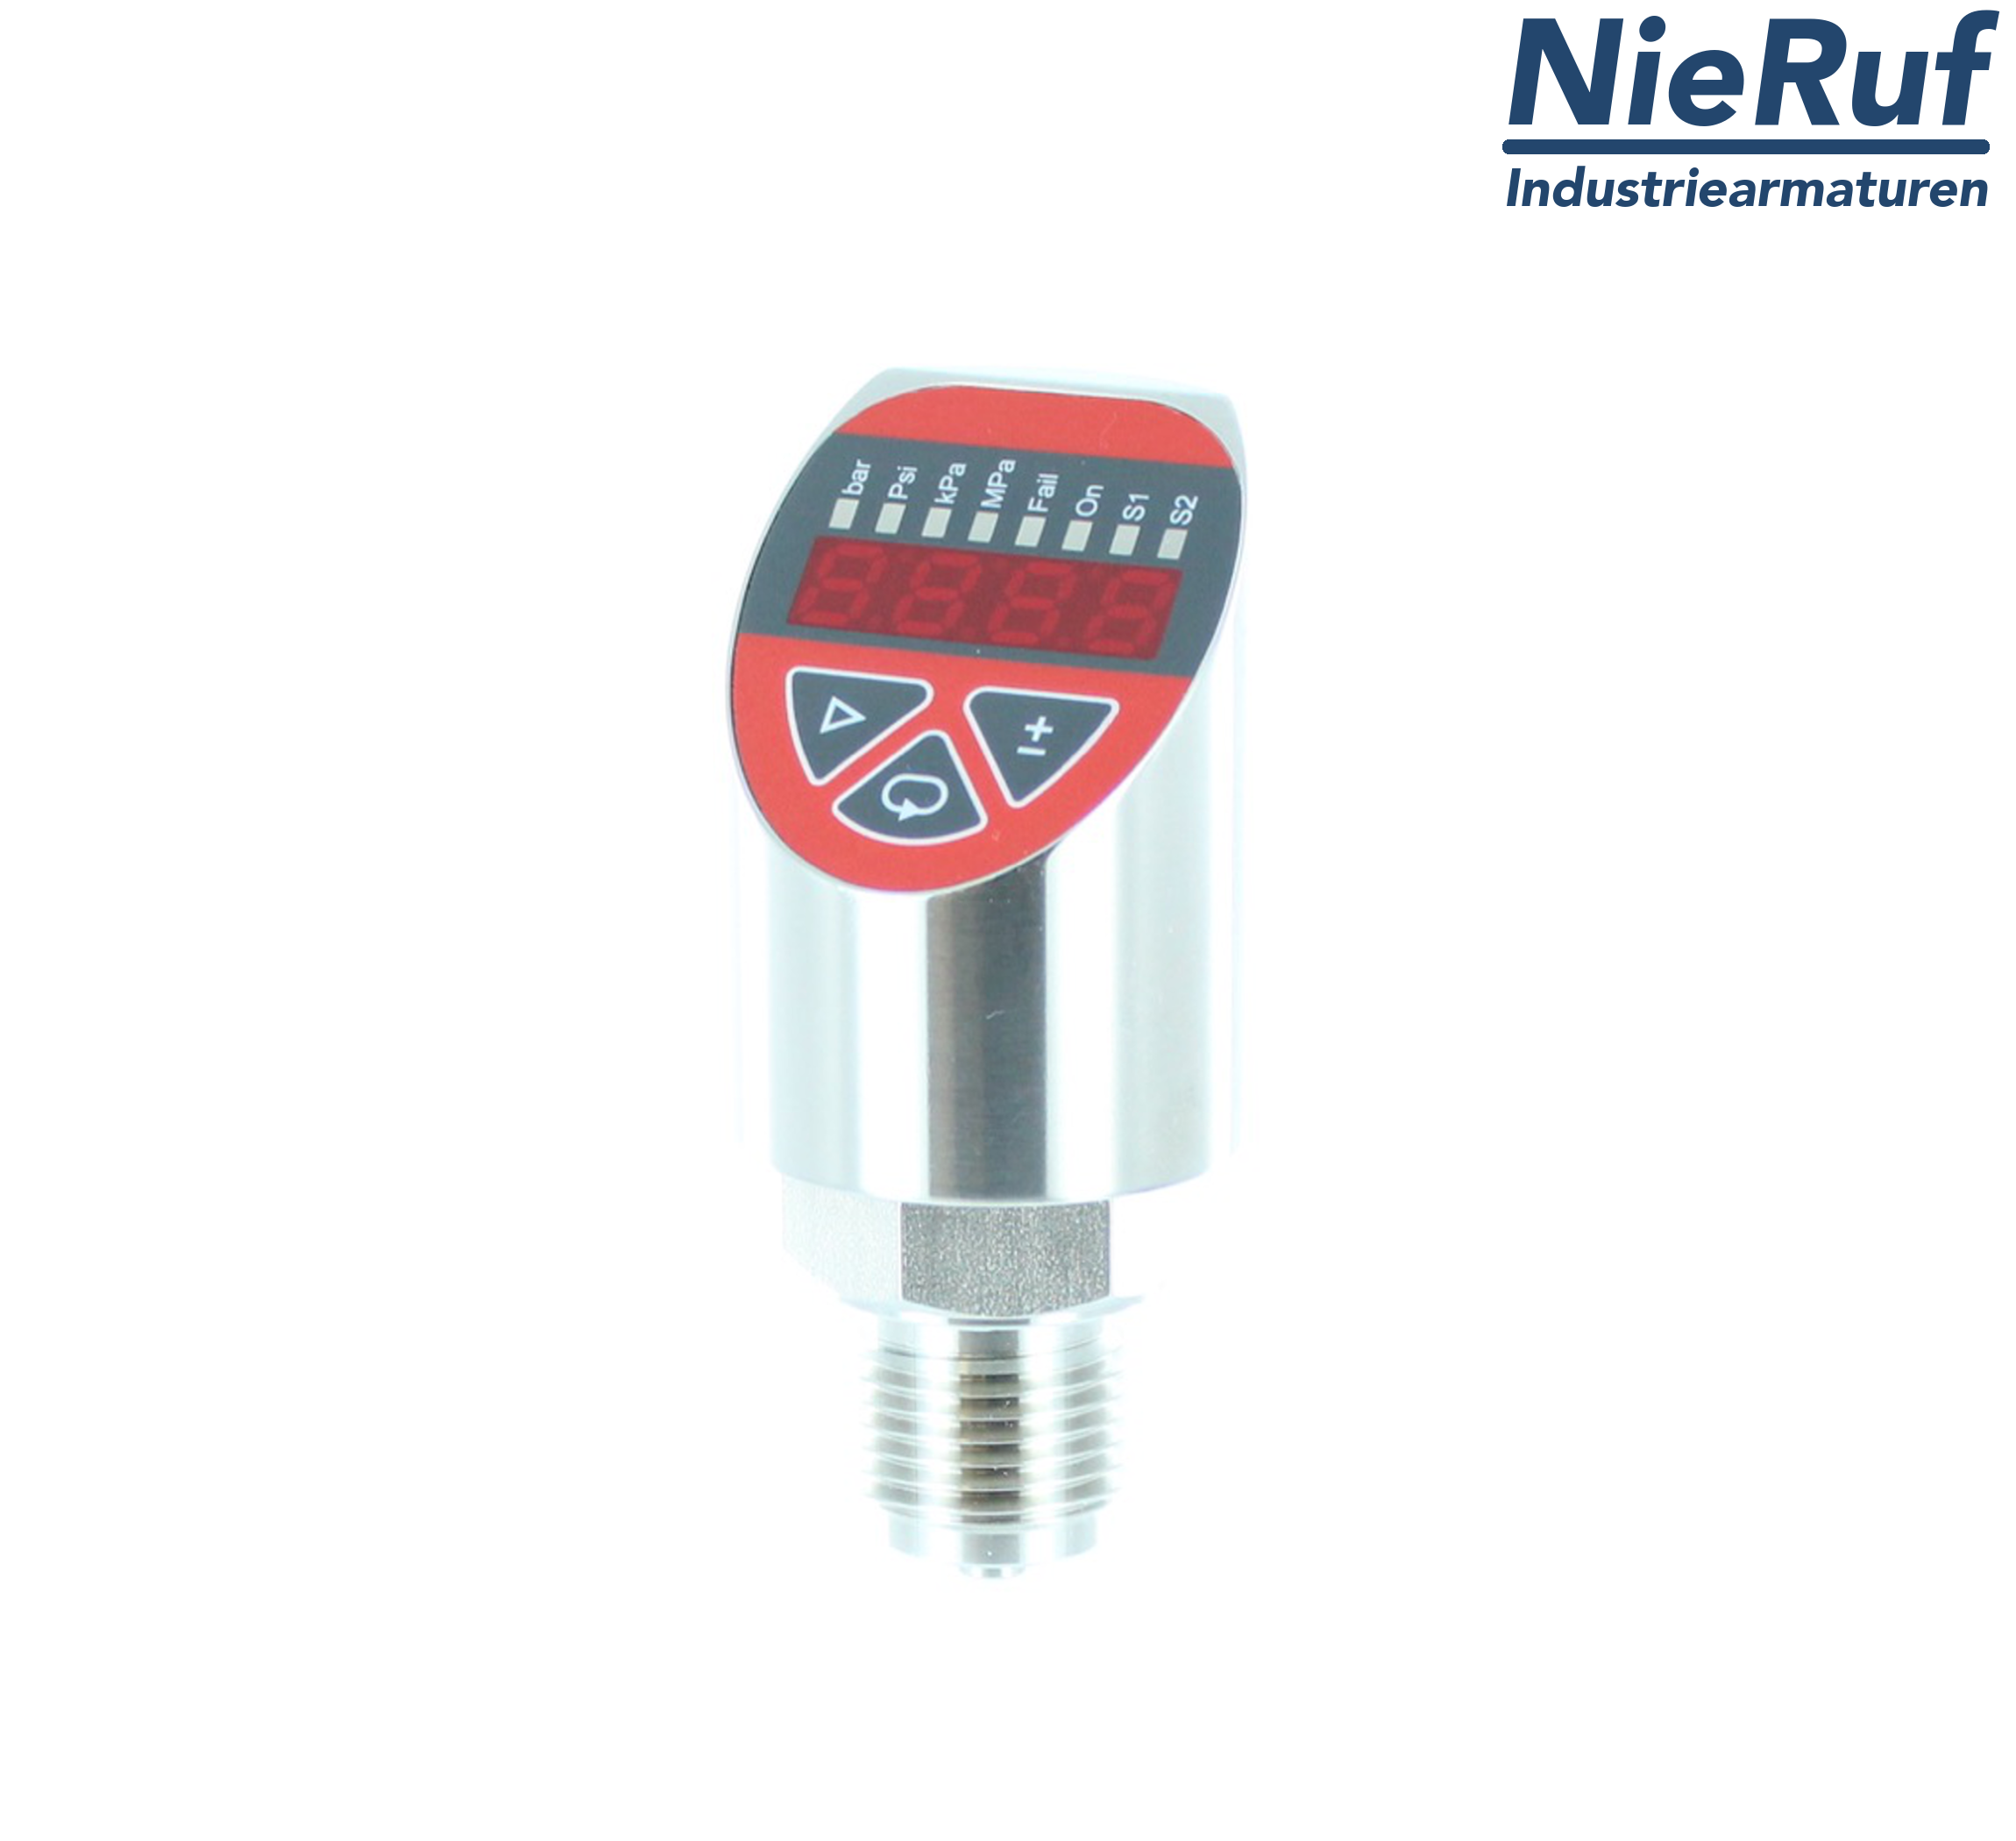 digital pressure sensor G 1/2" B 4-wire: 1xPNP, 1x4 - 20mA FPM 0,0 - 250,0 bar